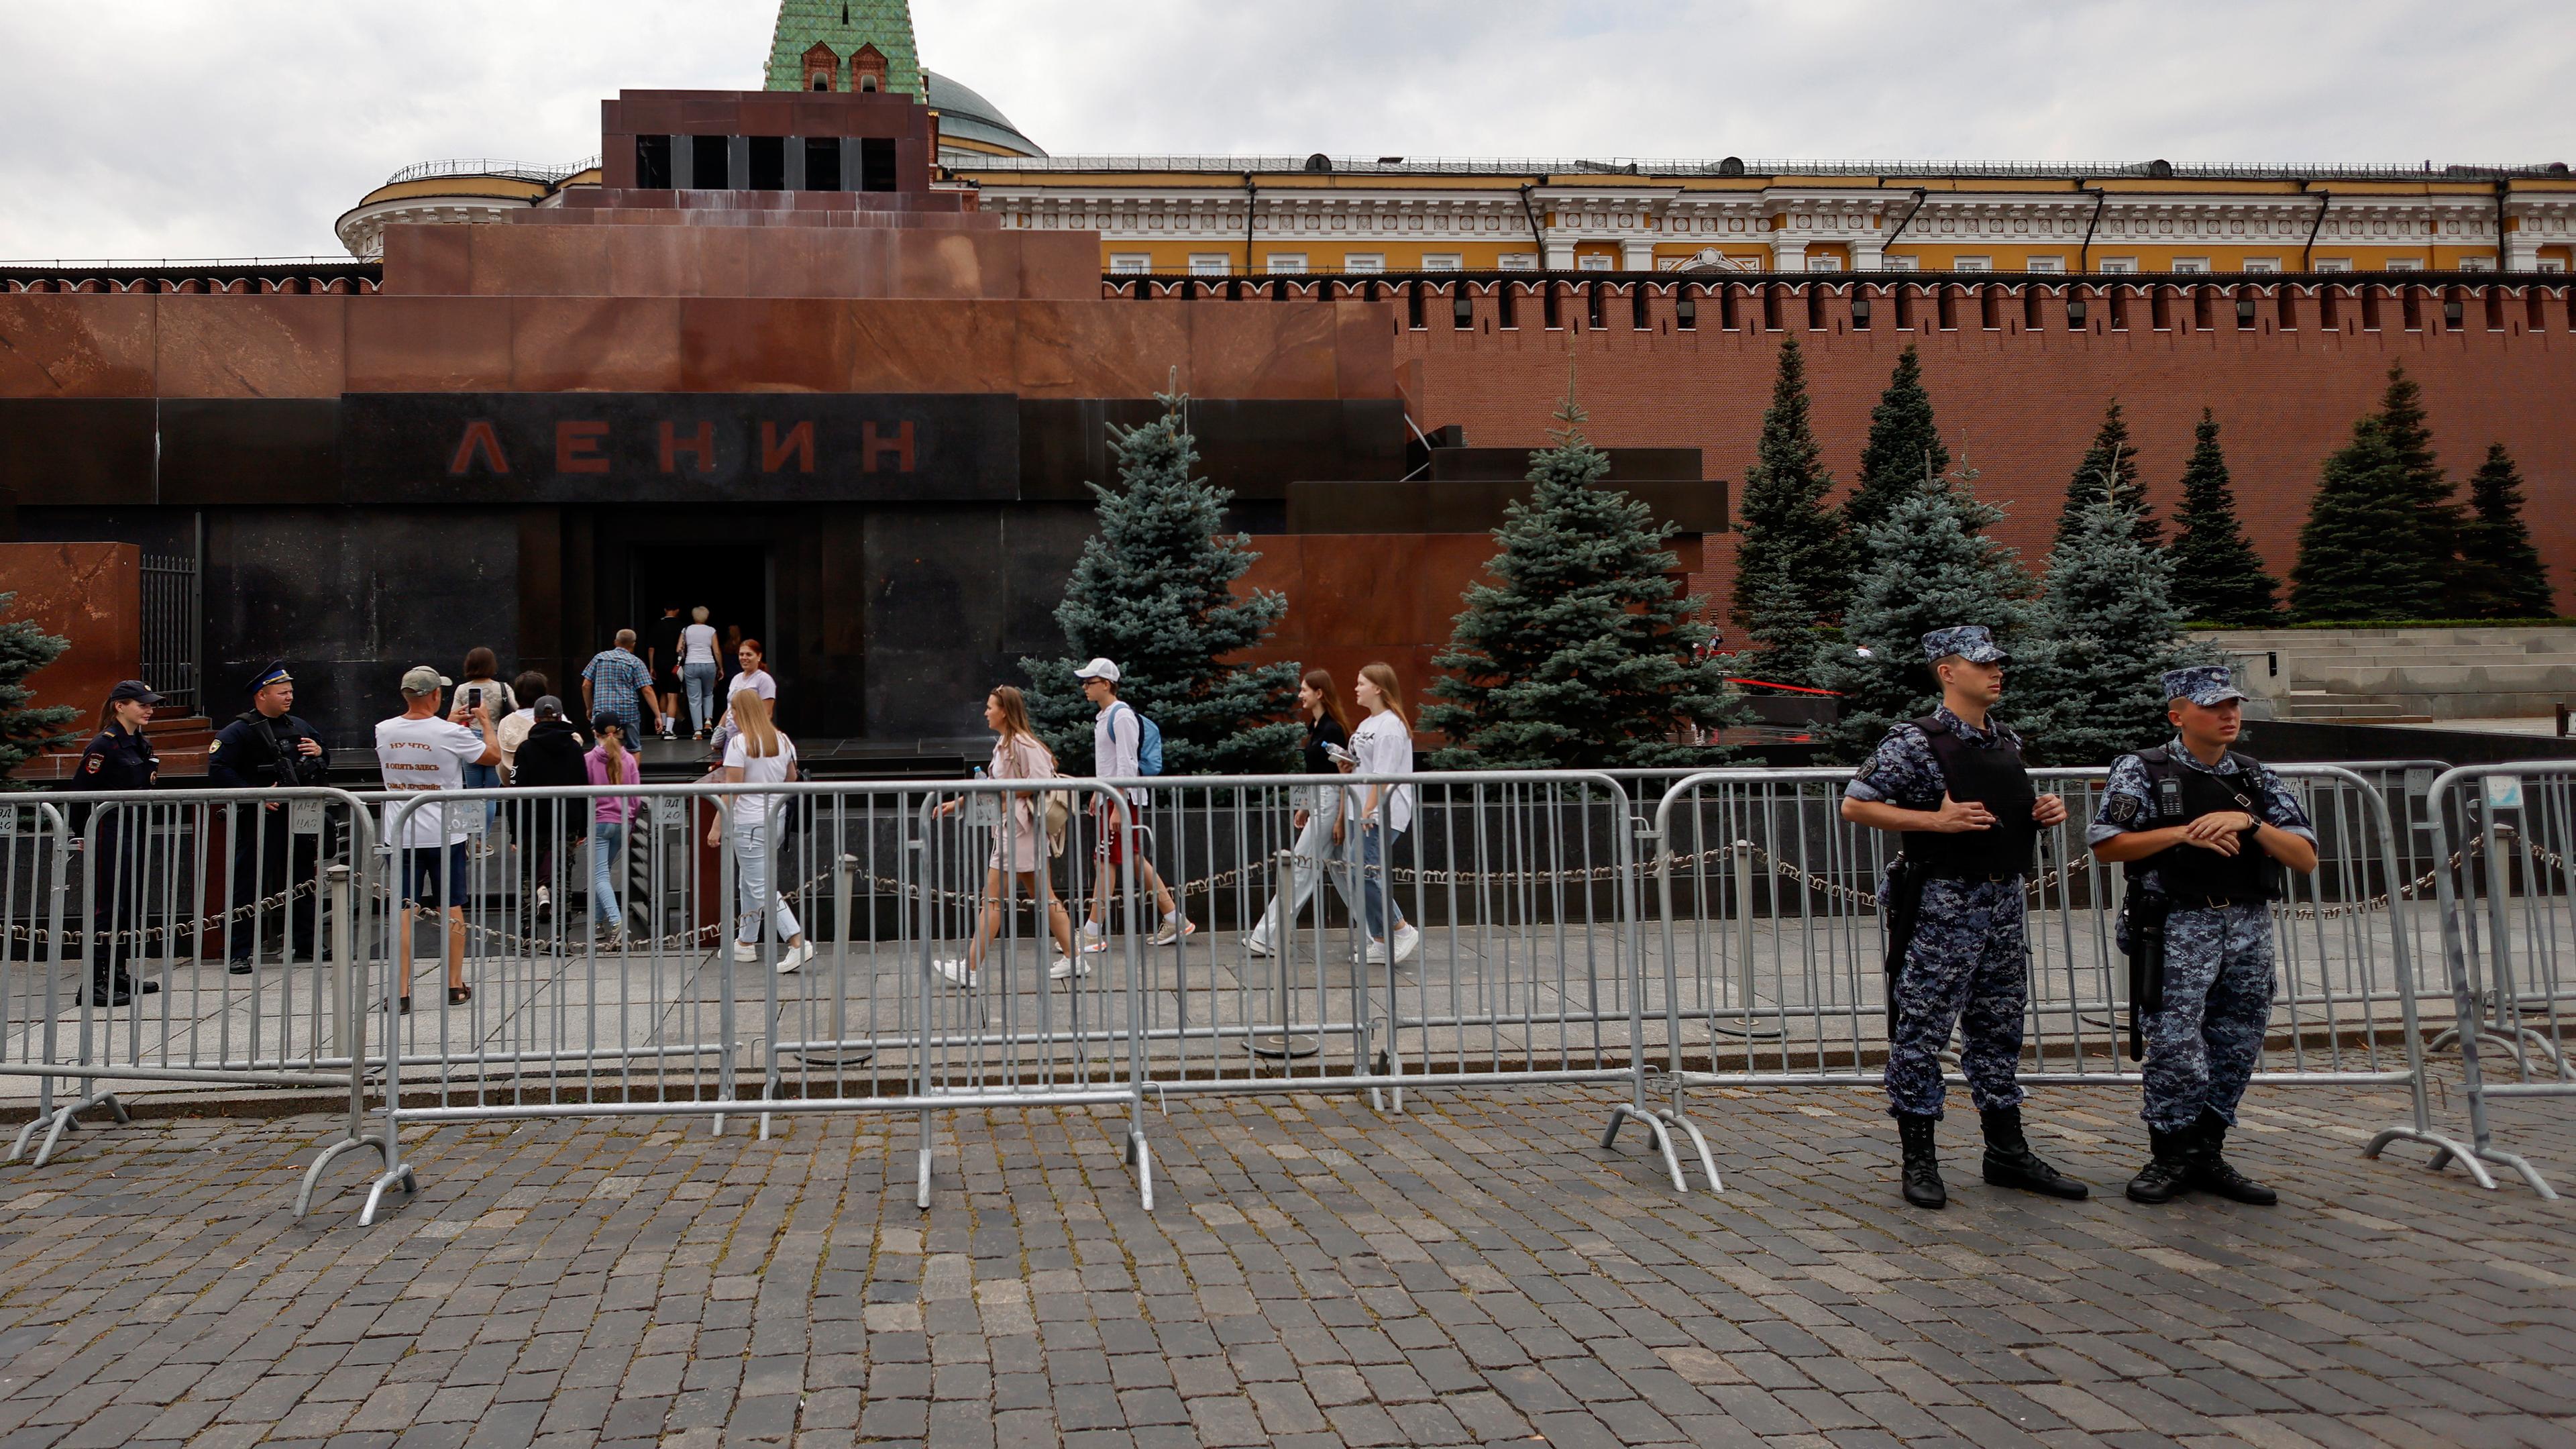 Zu sehen sind Touristen und Polizisten vorm Lenin-Mausoleum in Moskau.